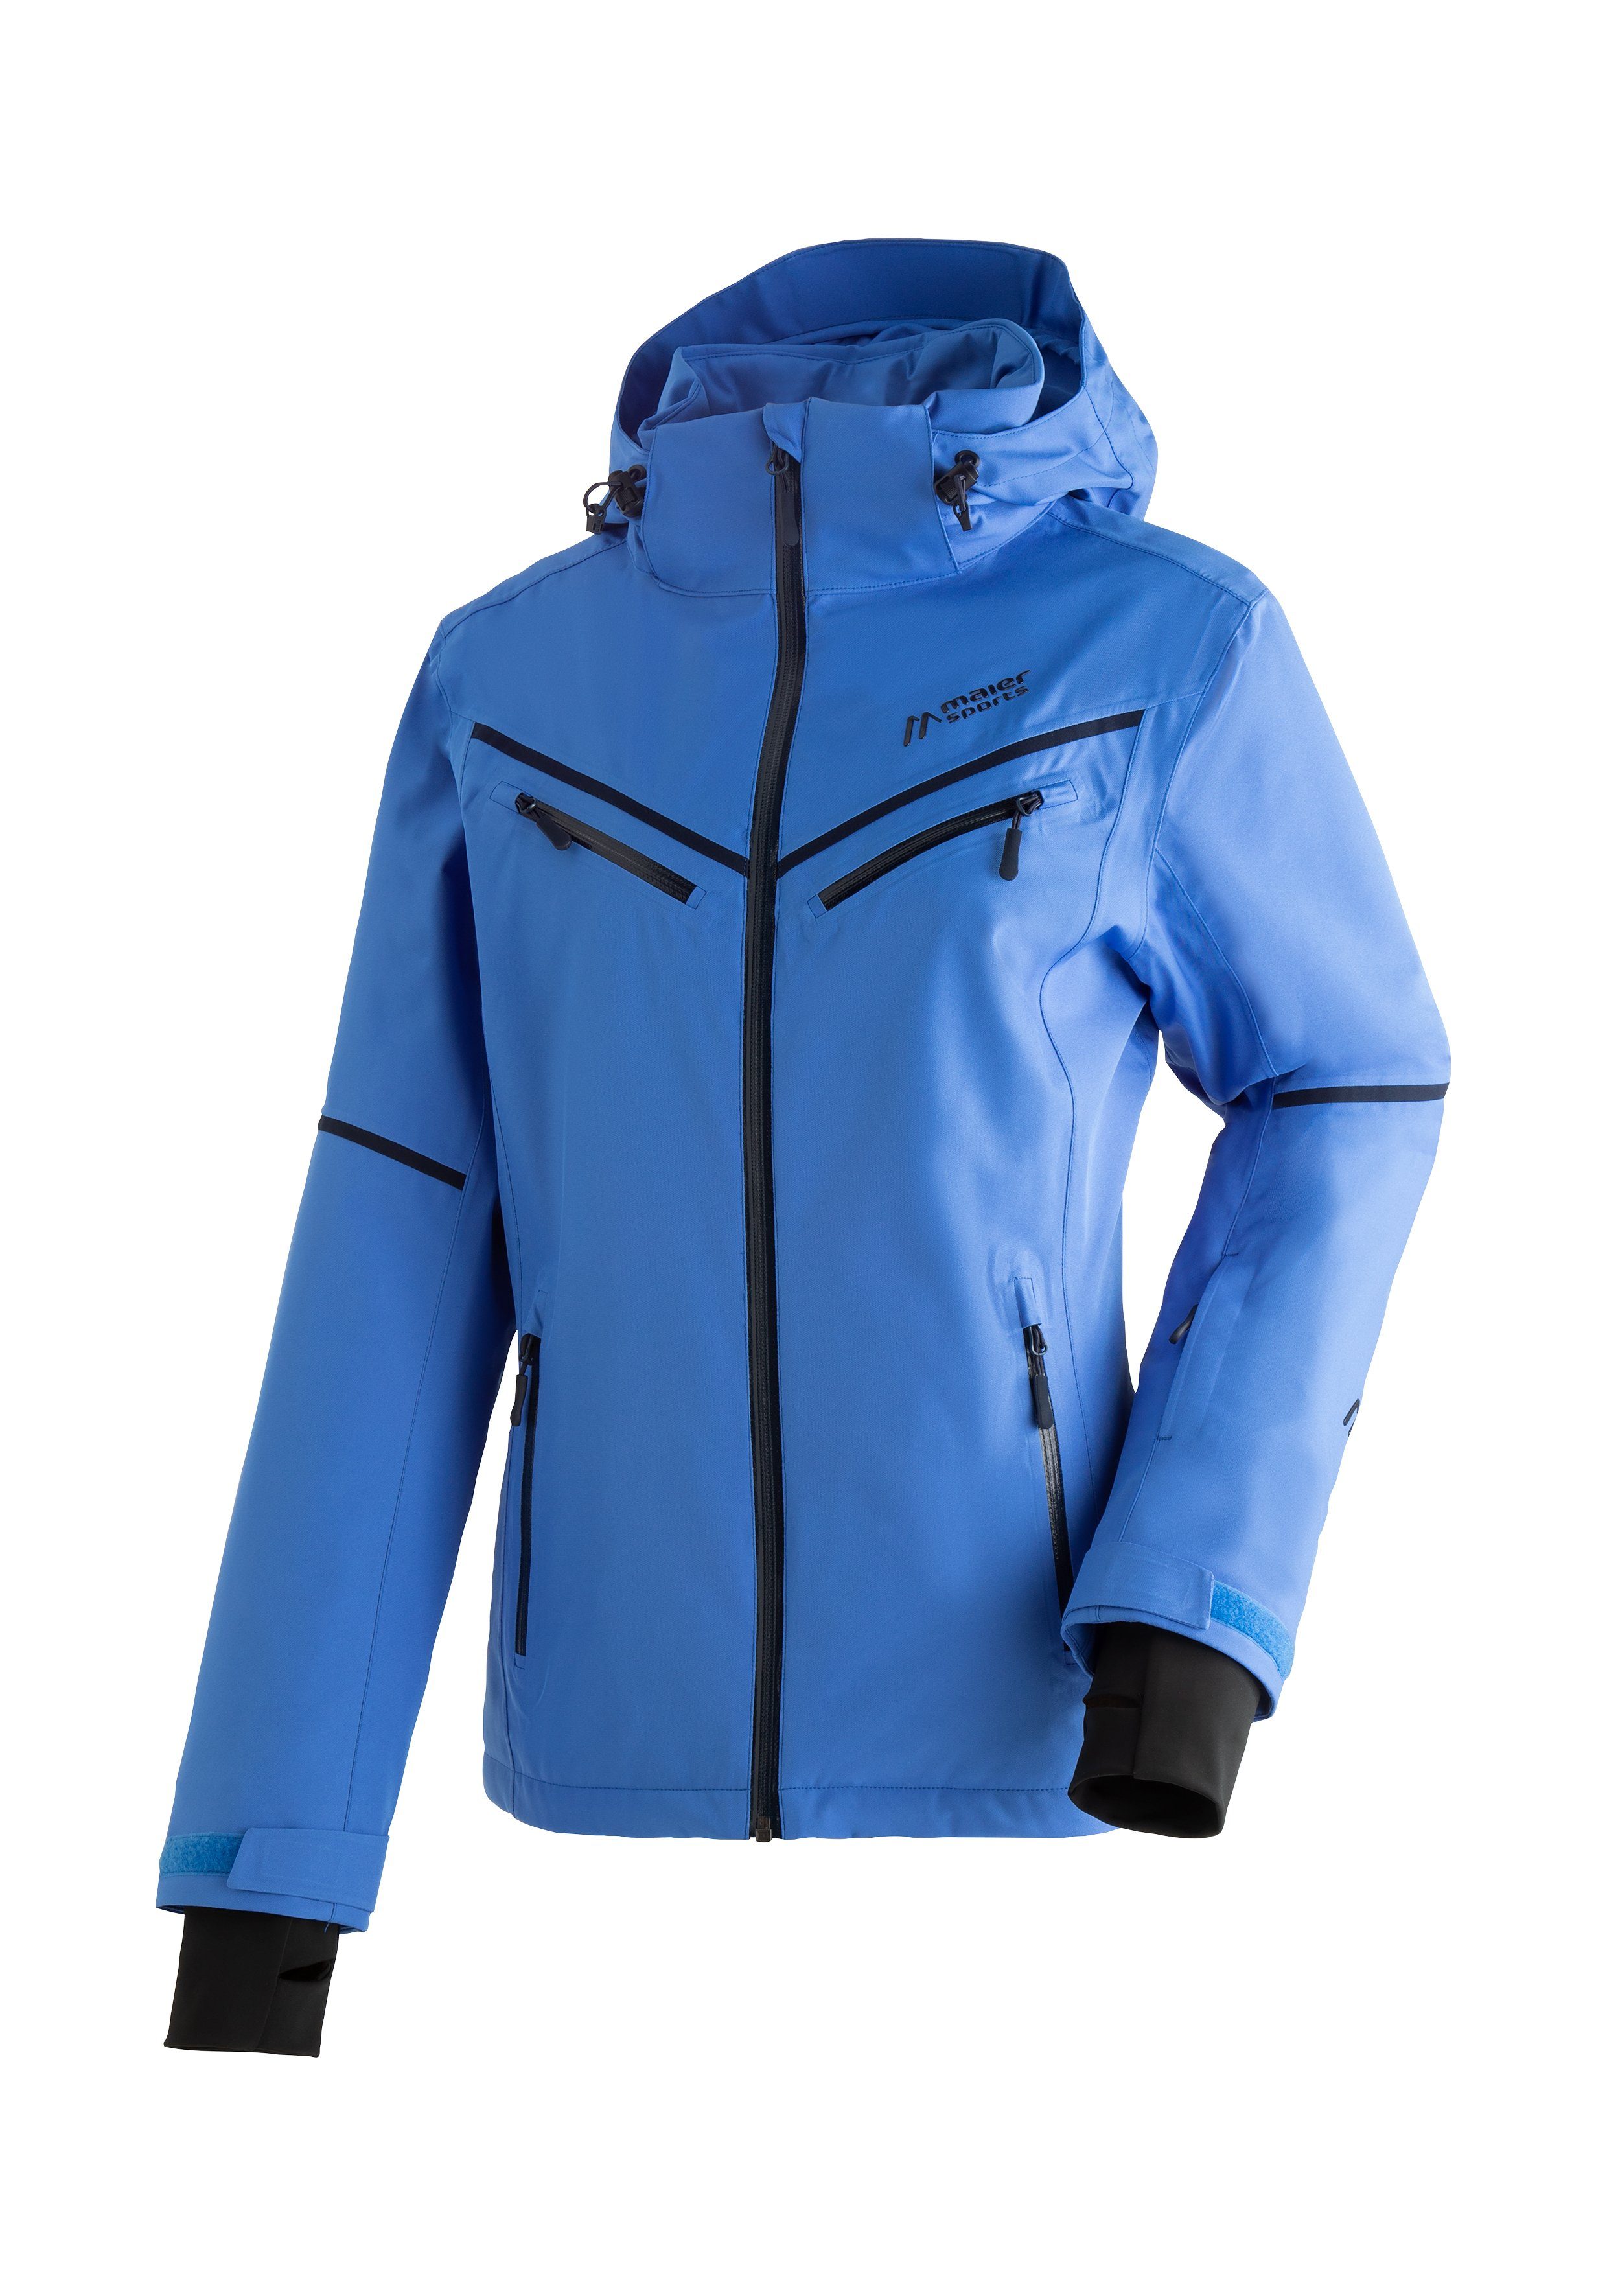 und Winterjacke Maier atmungsaktive pastellblau Skijacke wasserdichte Damen winddichte Lunada Sports Ski-Jacke,